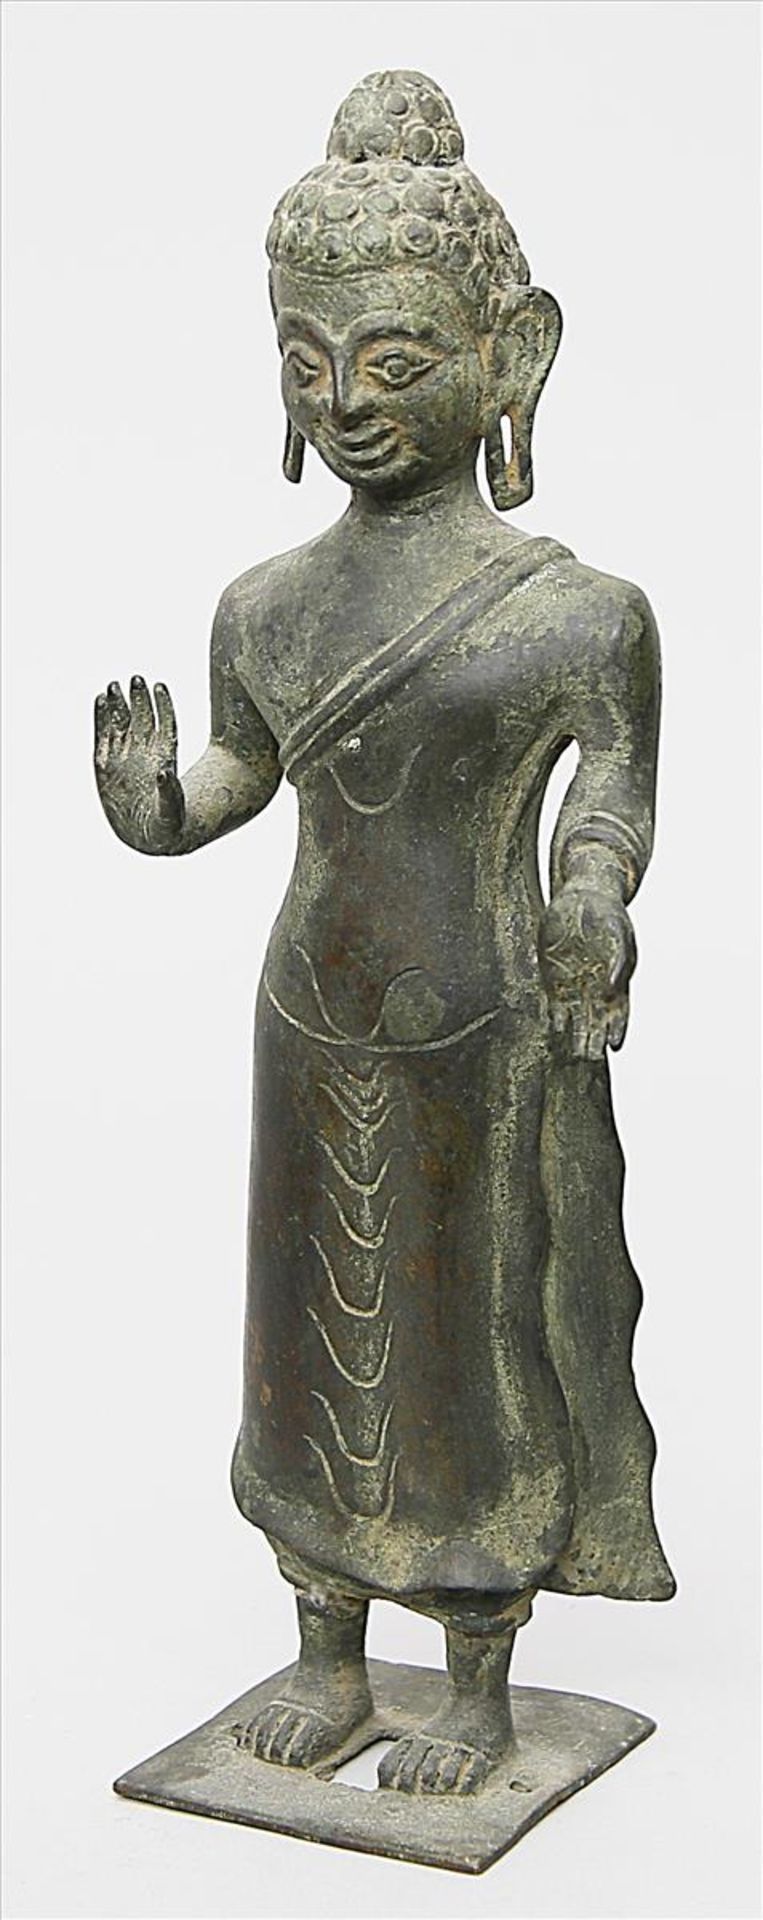 Skulptur einer hinduistischen Gottheit.